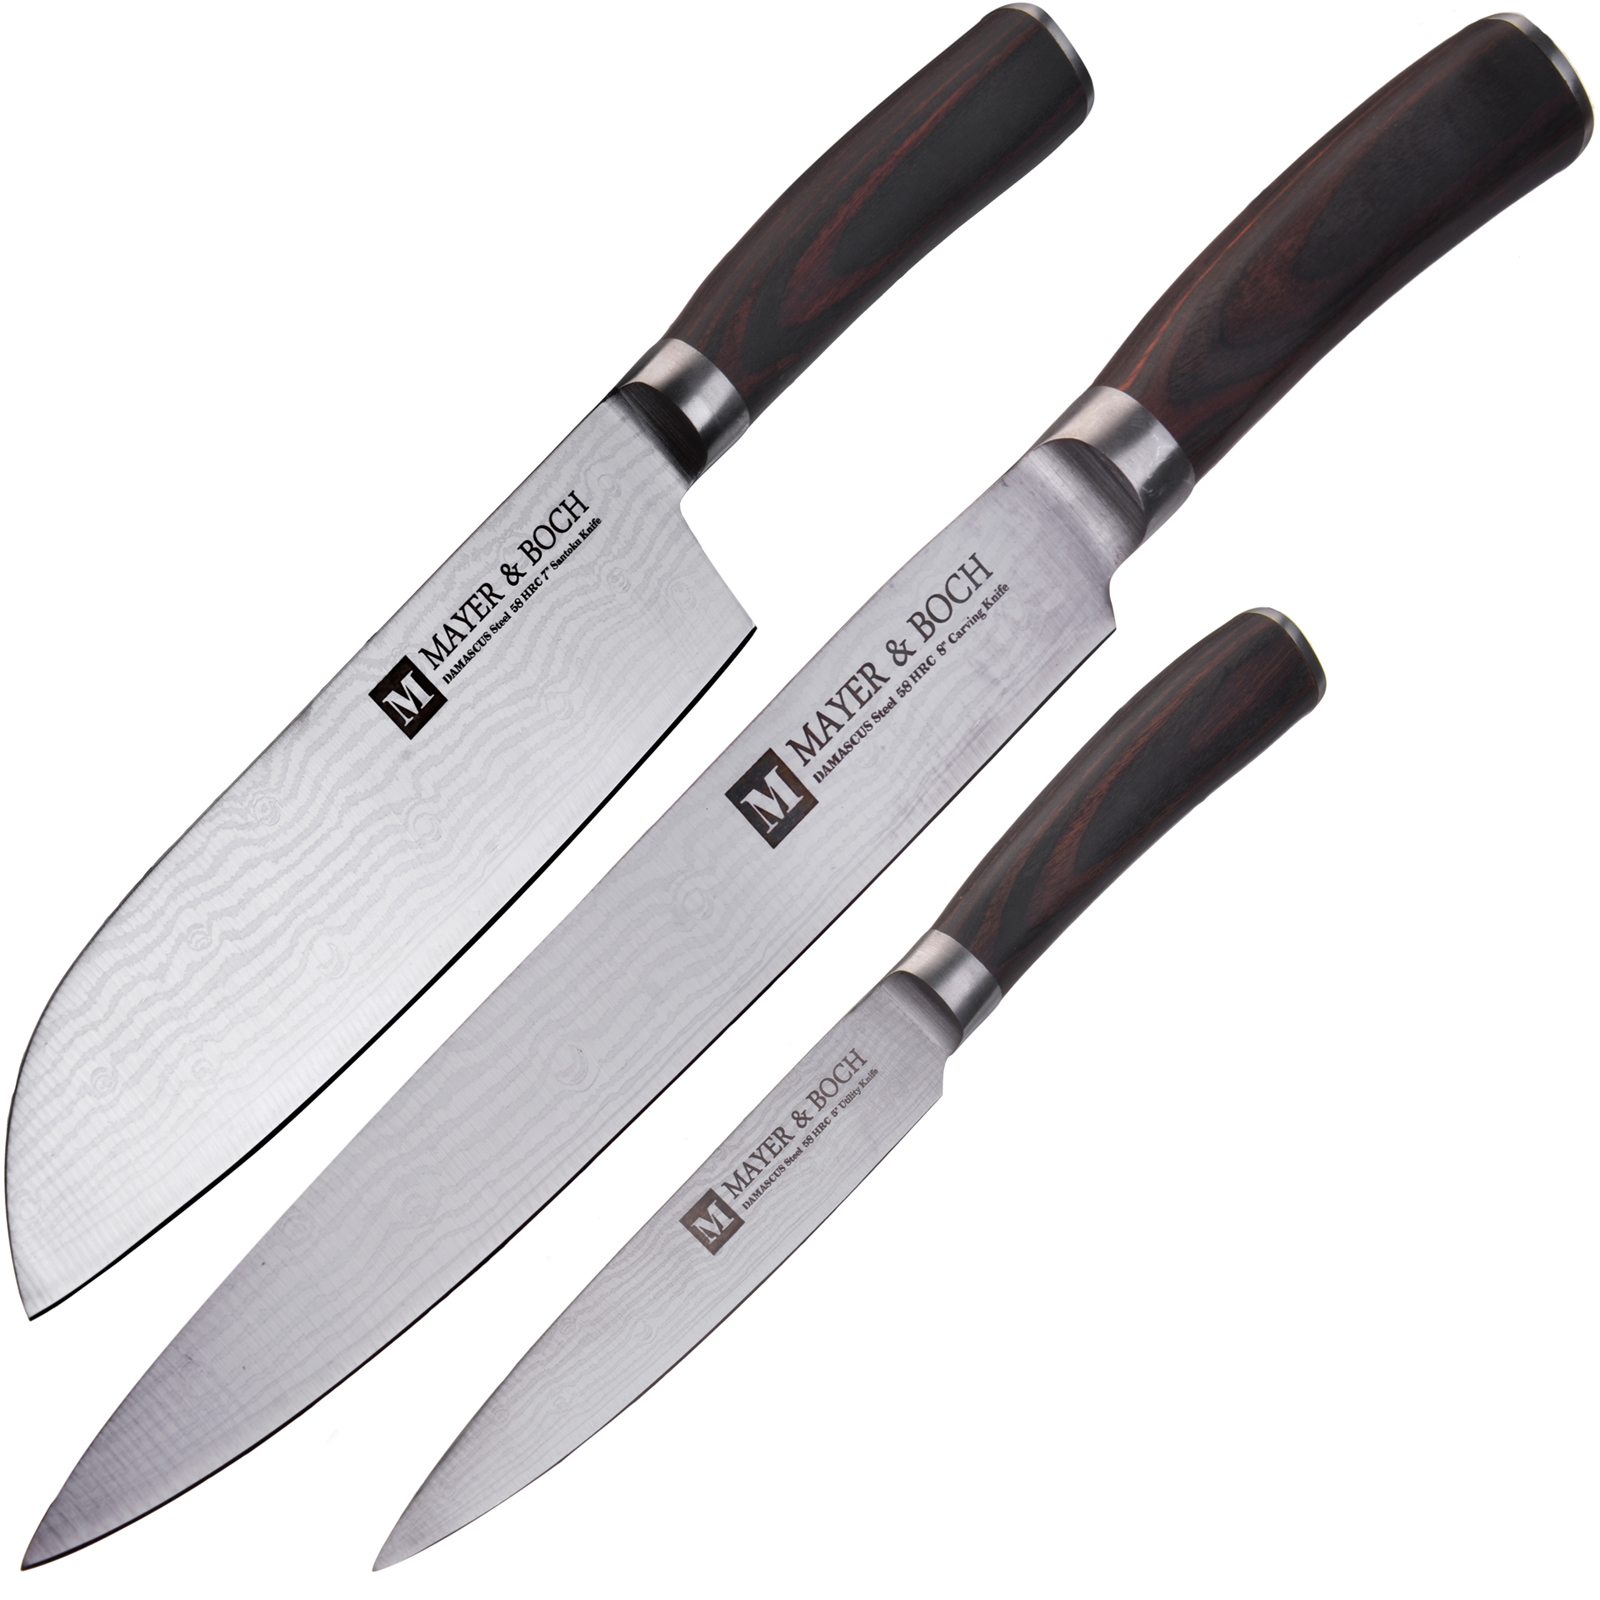 Набор ножей Mayer & Boch, цвет: серебристый, коричневый, 3 шт. 28001